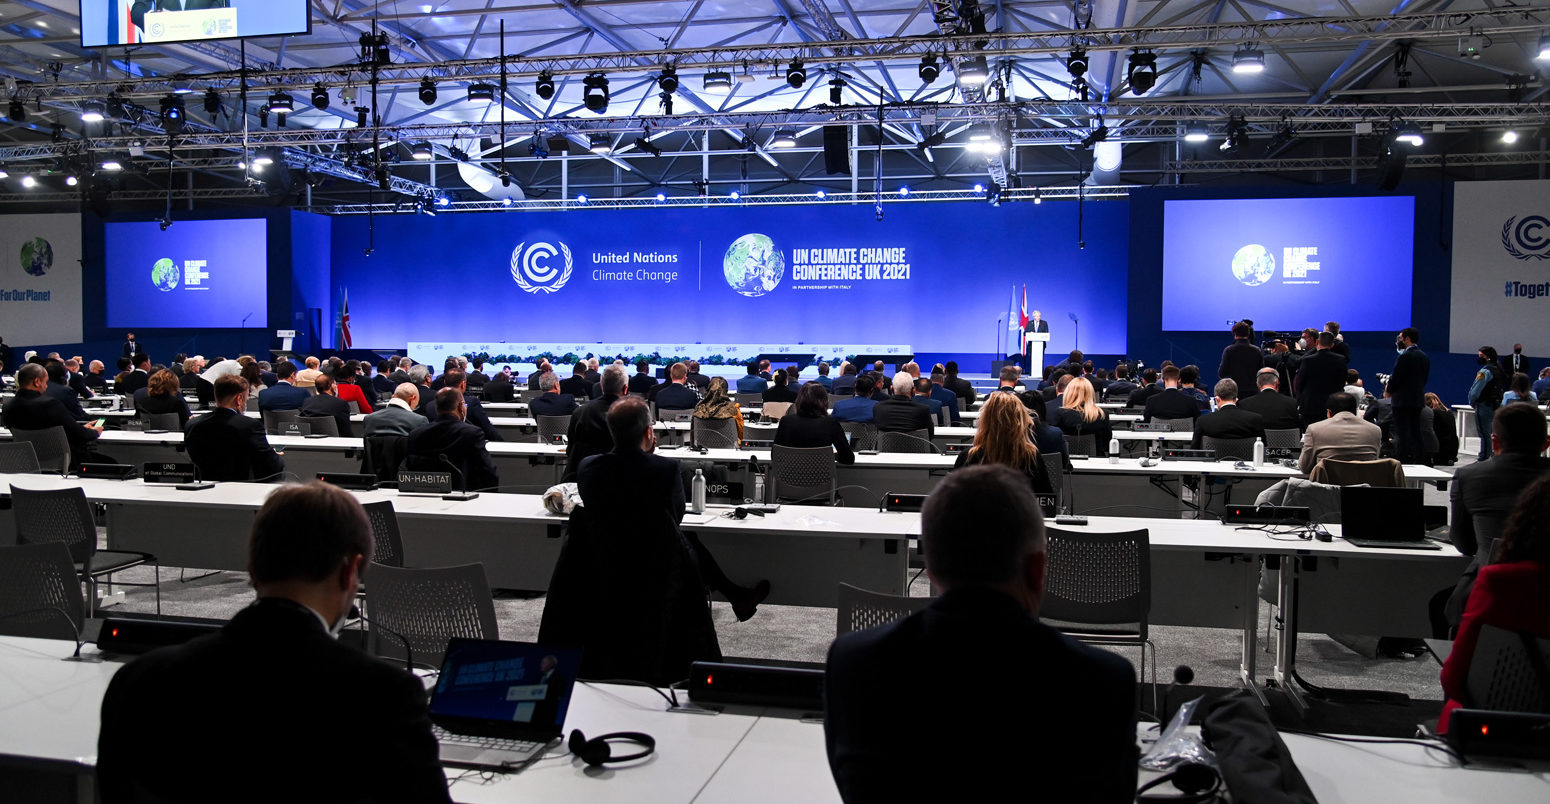 英国首相鲍里斯·约翰逊(Boris Johnson)在格拉斯哥举行的第26届联合国气候变化大会开幕式上讲话